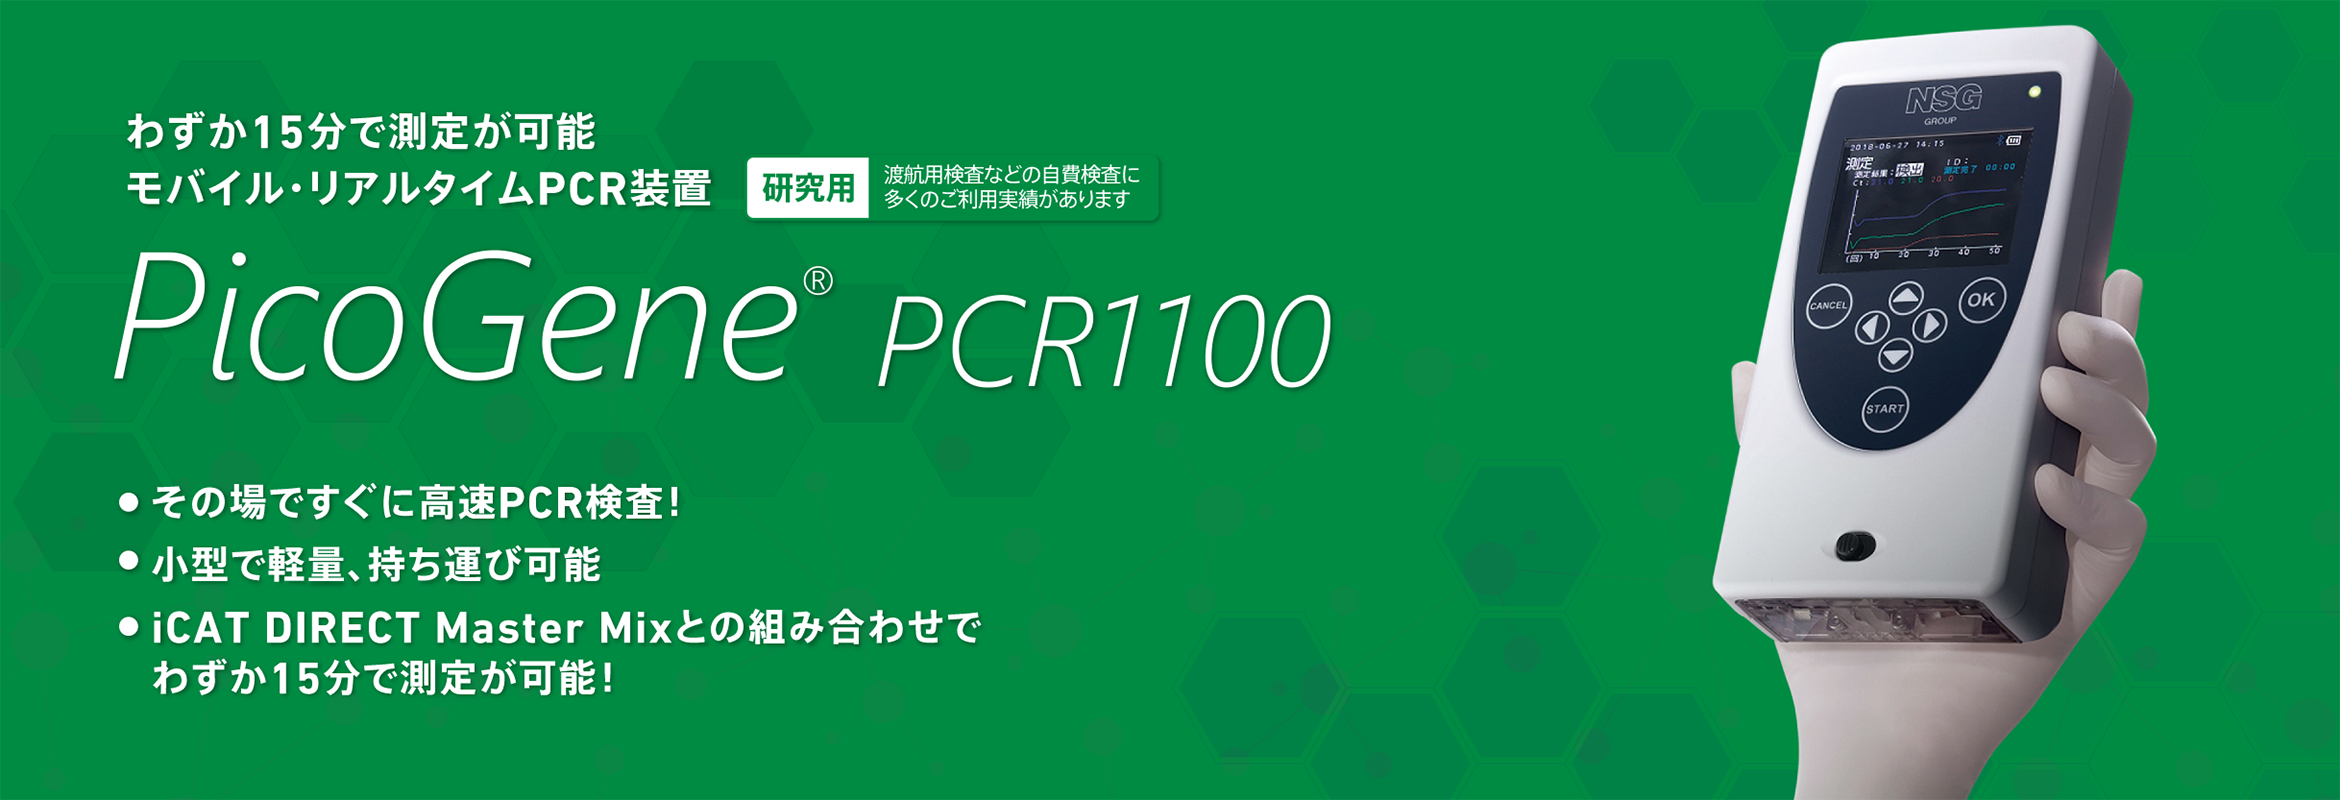 モバイルリアルタイムPCR装置 PicoGene PCR1100